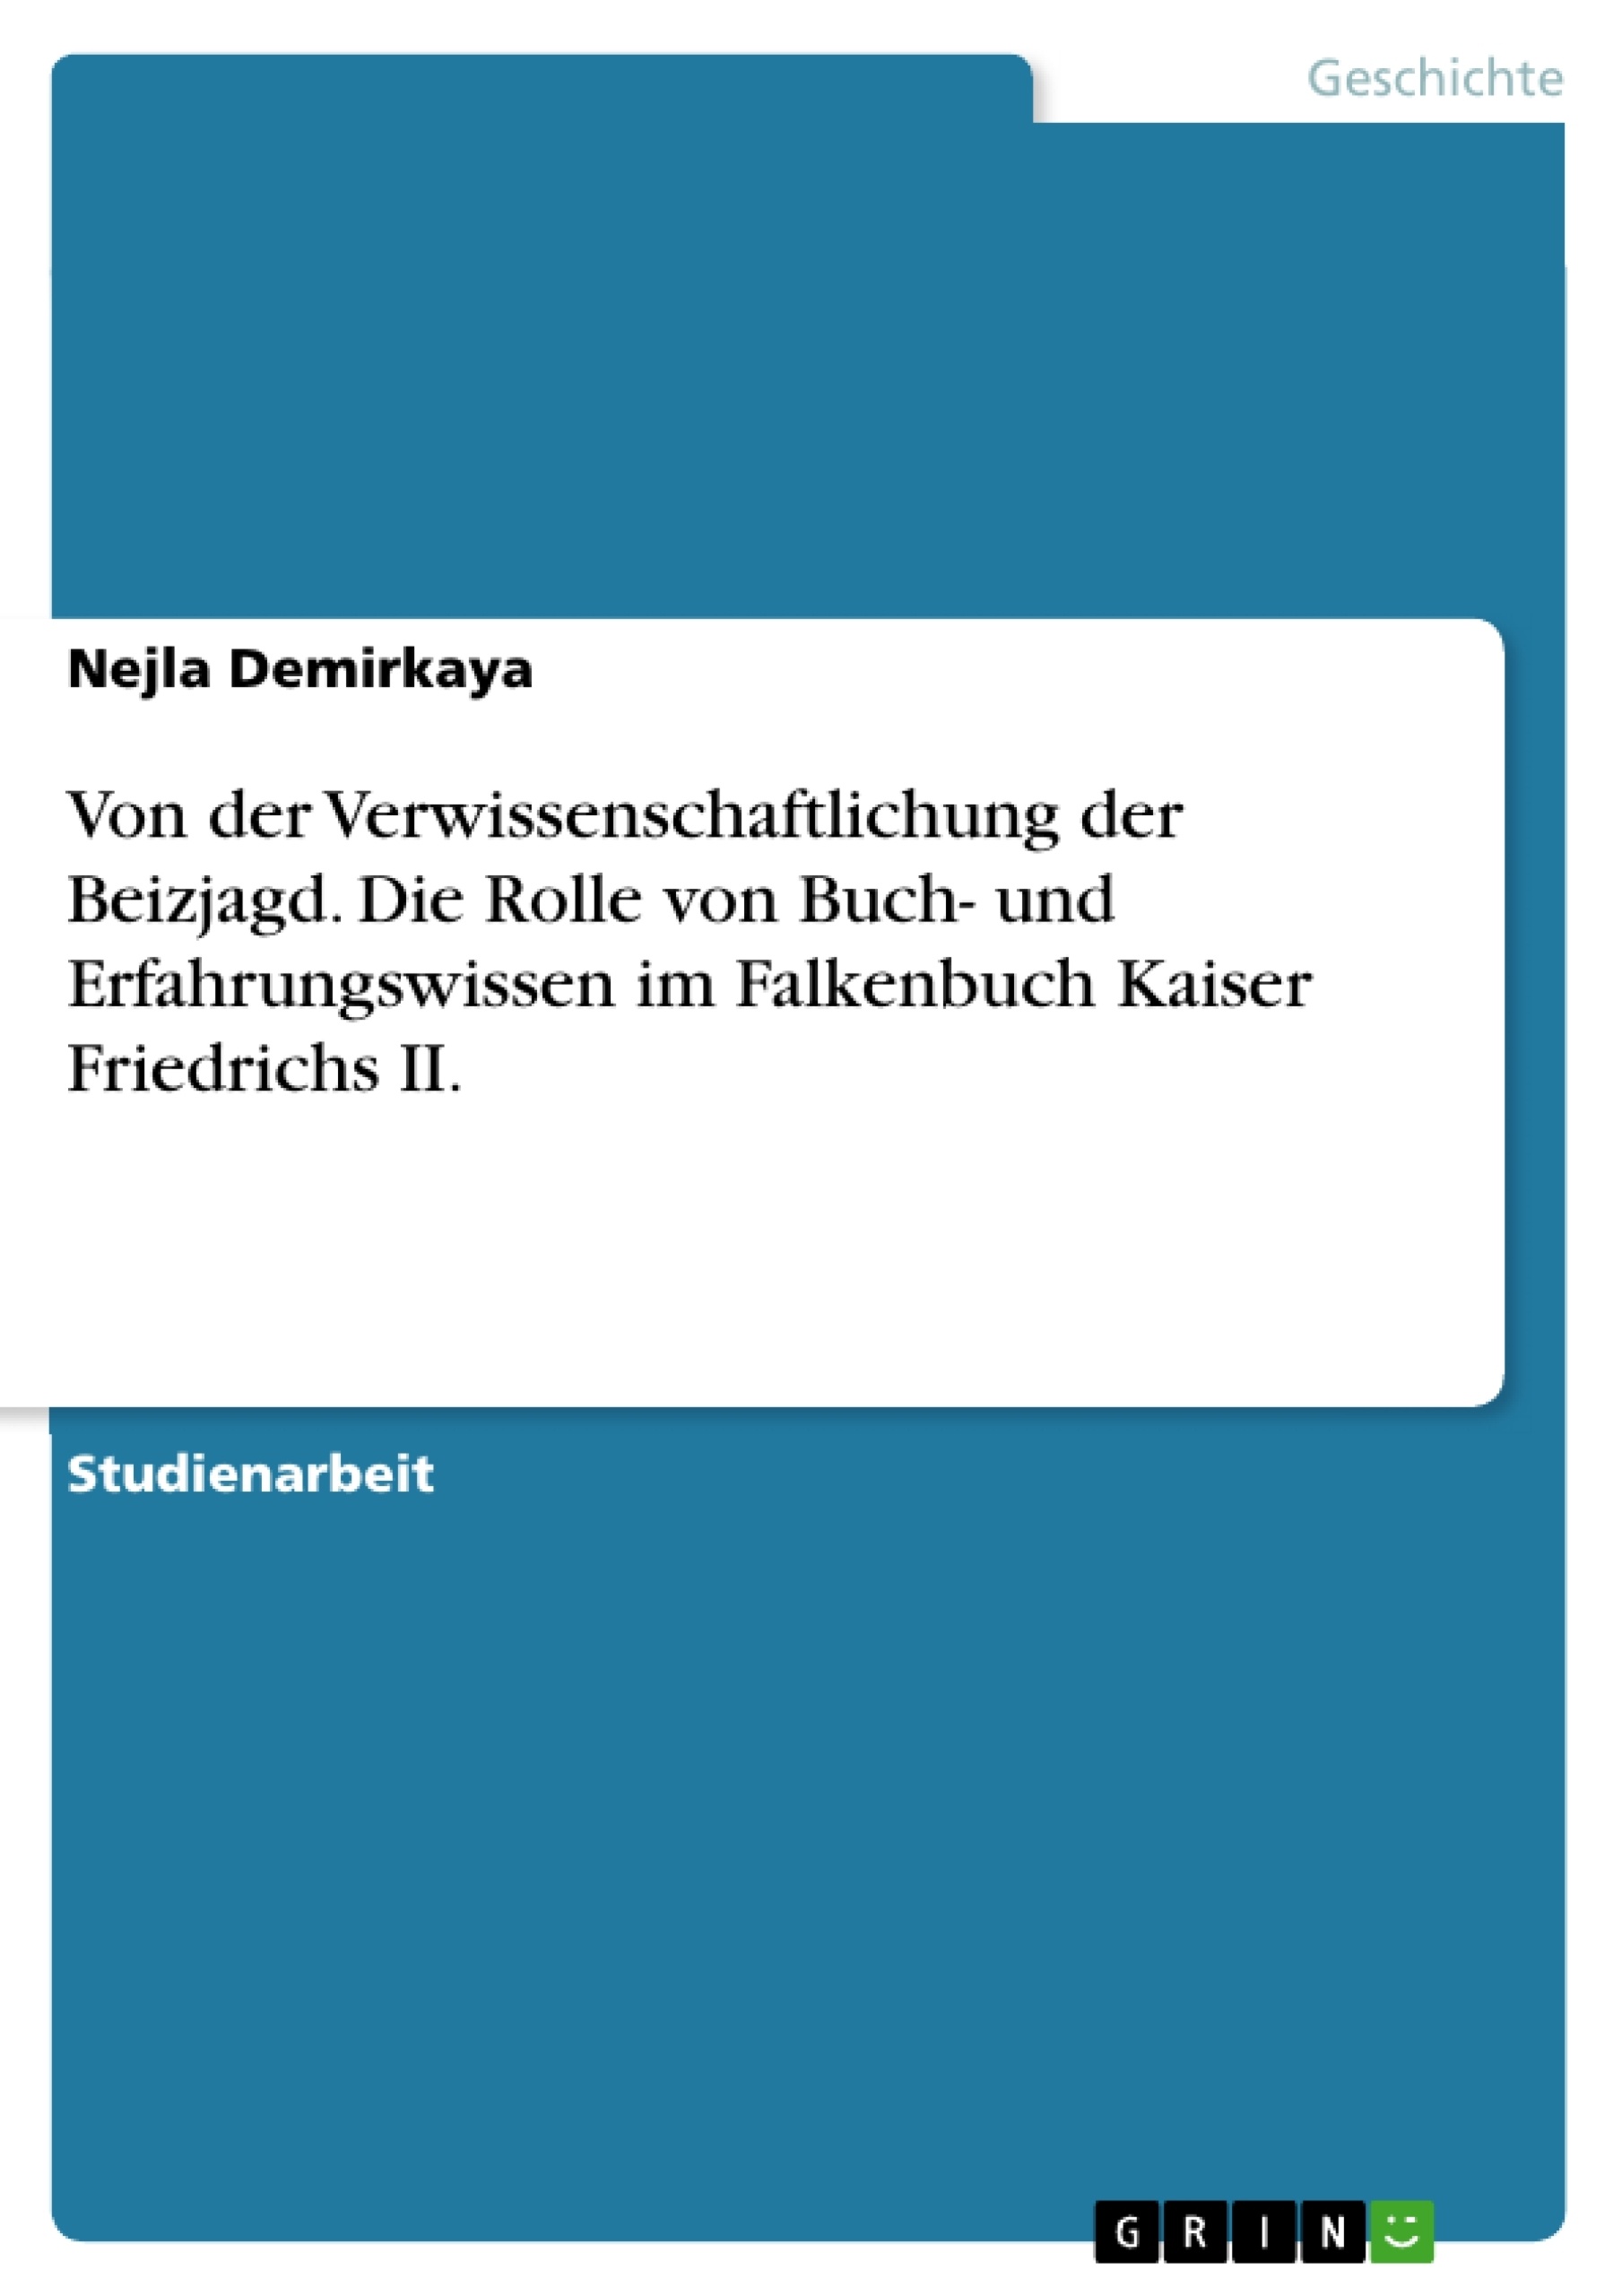 Titre: Von der Verwissenschaftlichung der Beizjagd. Die Rolle von Buch- und Erfahrungswissen im Falkenbuch Kaiser Friedrichs II.